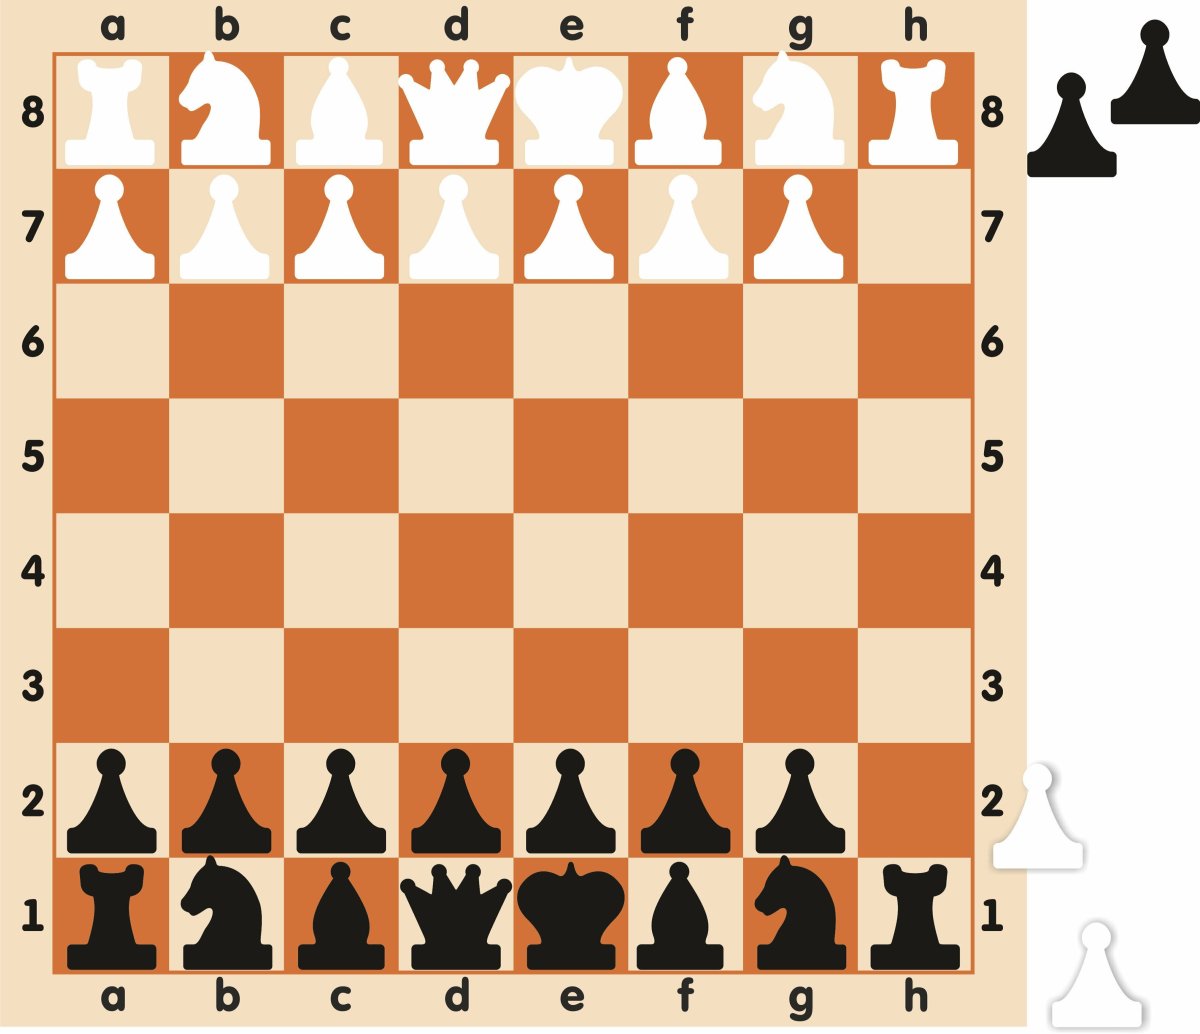 Доска шахматная демонстрационная магнитная 73х73